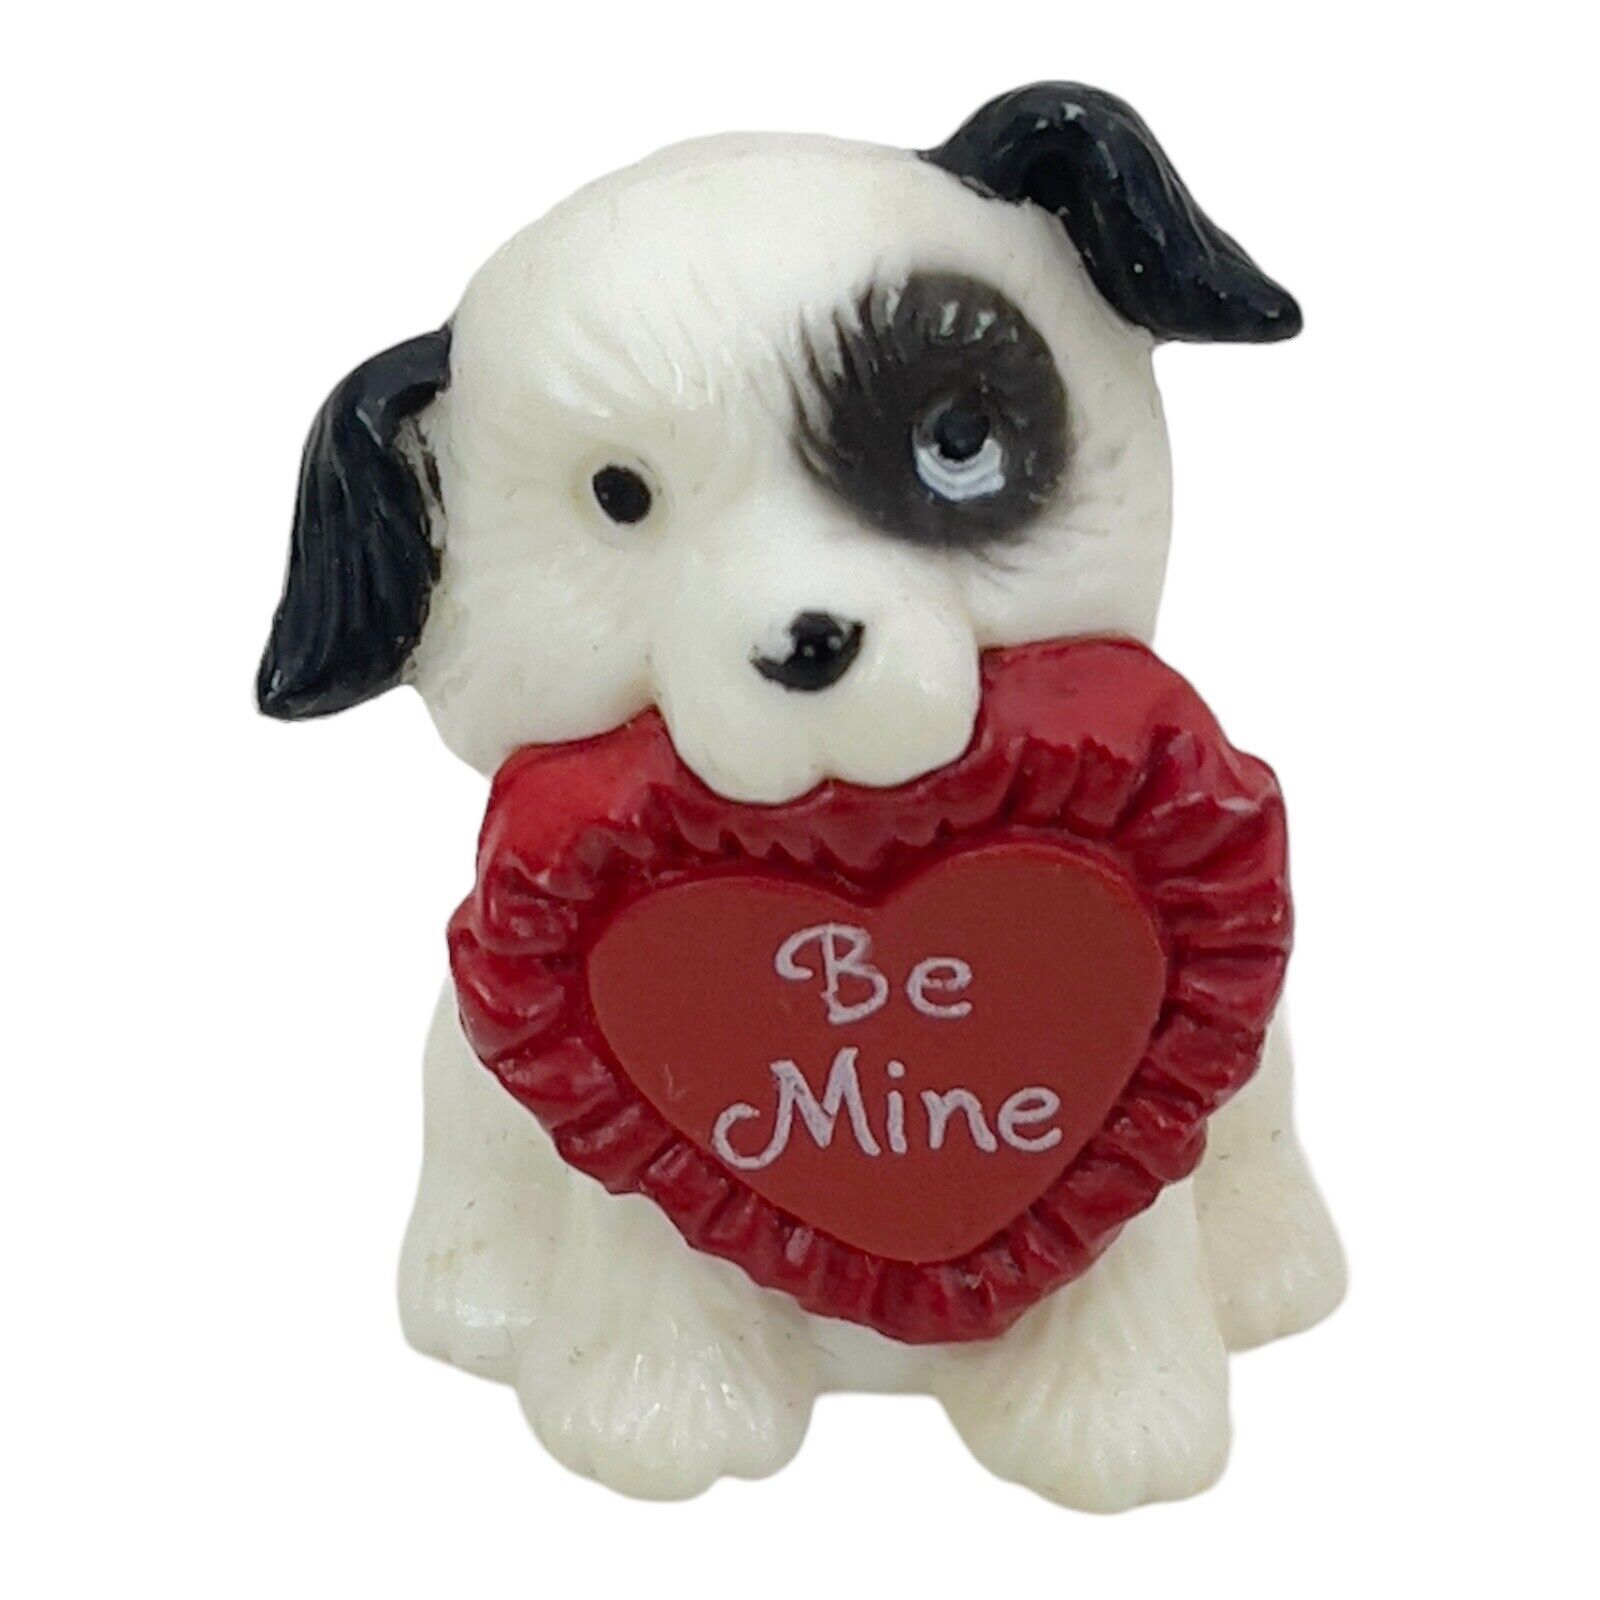 Vintage 1983 Hallmark Merry Miniature Be Mine Heart Puppy Dog White Black Spot